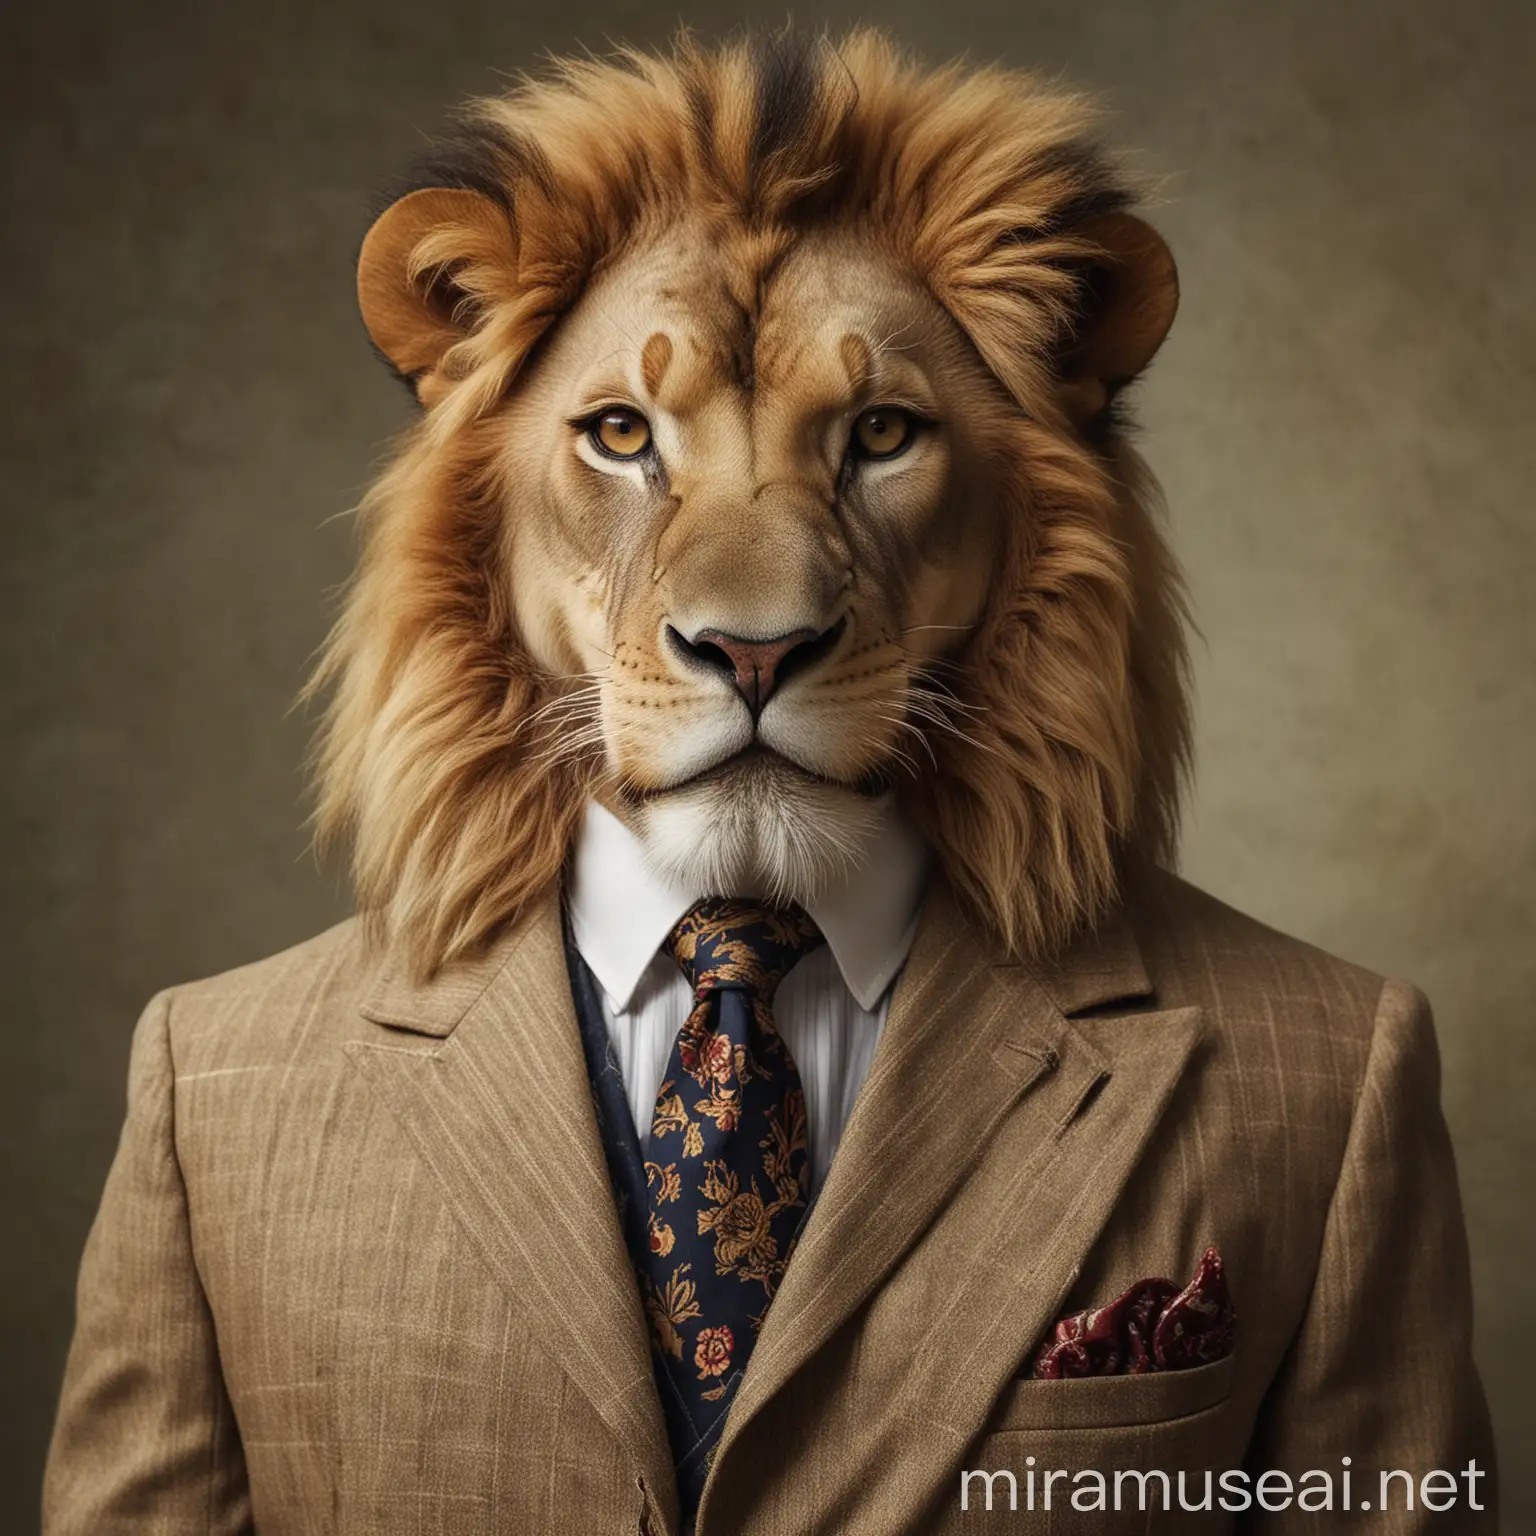 Regal Lion in Vintage Suit Portrait